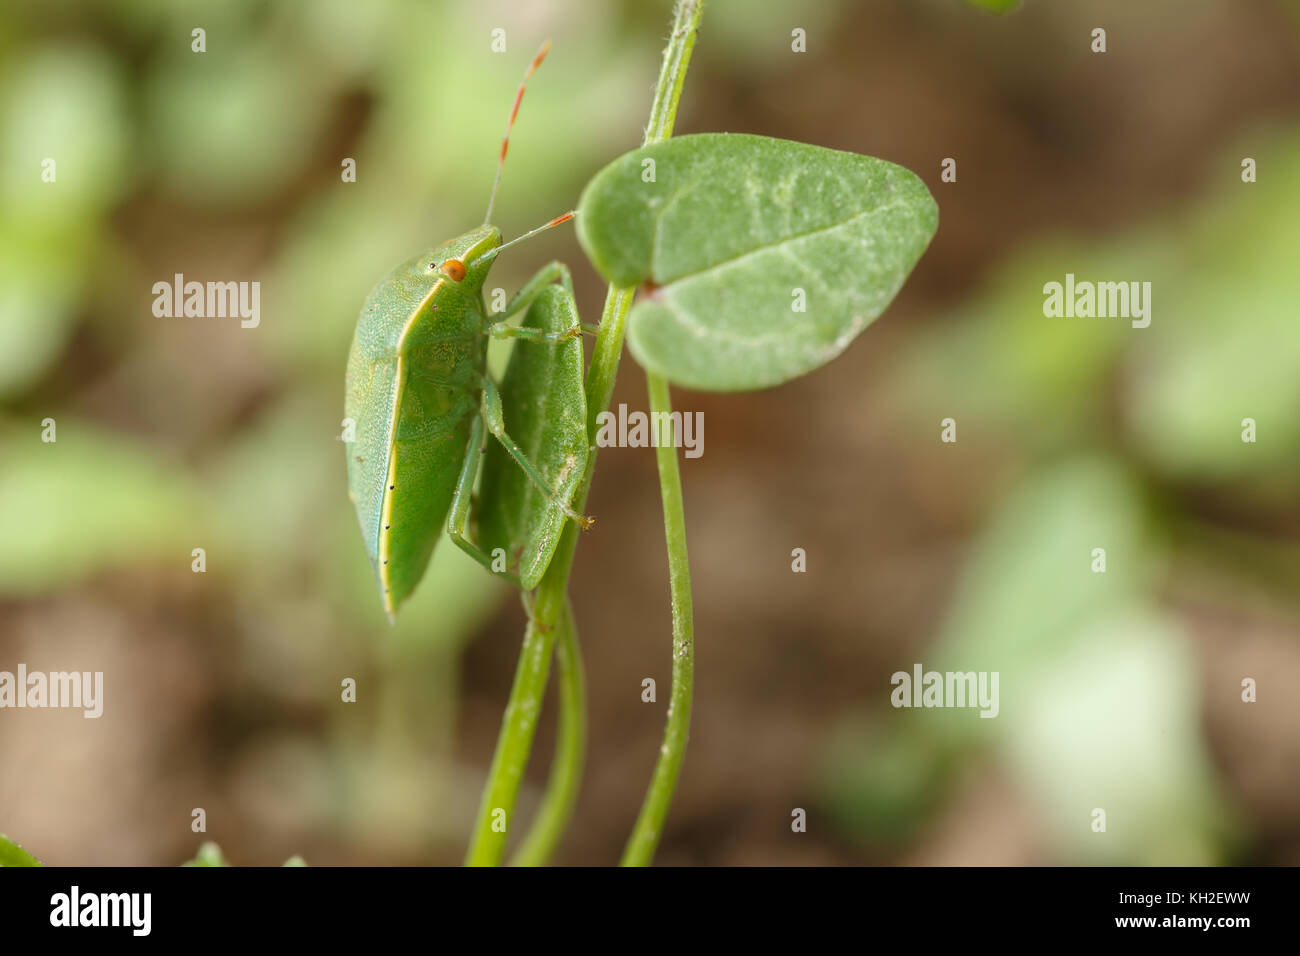 Grüne Bug findet seinen Liebling verlässt. Beispiel für perfekten Mimikry von Nezara viridula der lokalen Vegetation von Vögel und andere Insekten zu verbergen Stockfoto